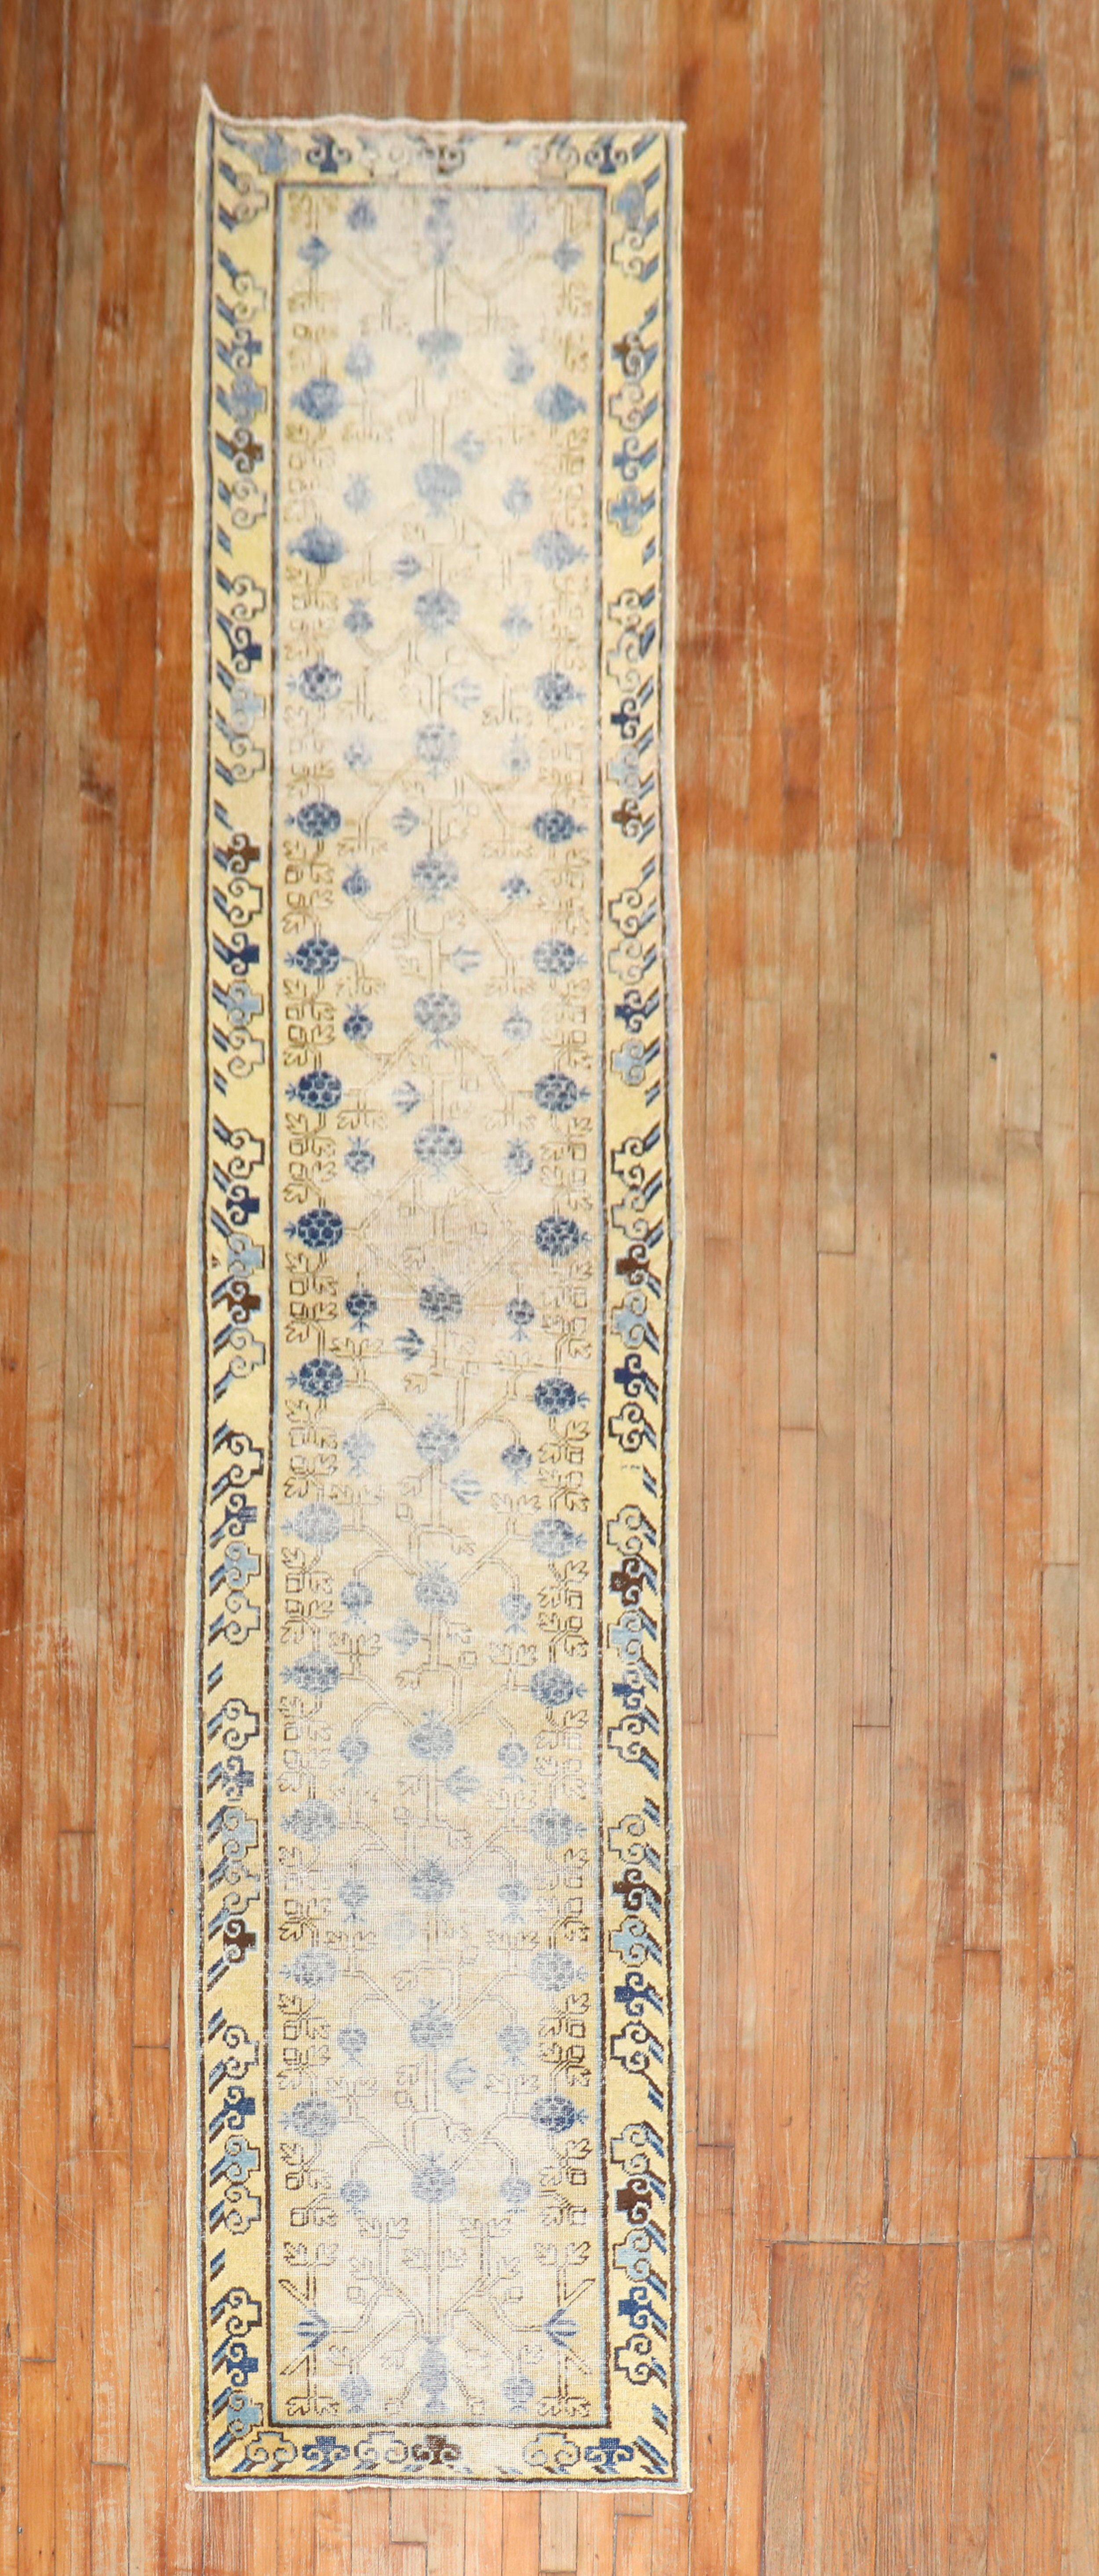 Tapis de course Khotan de la fin du XIXe siècle, usé, avec un motif de grenade en gris, moutarde, beige et bleu denim

Mesures : 2'6'' x 14'.